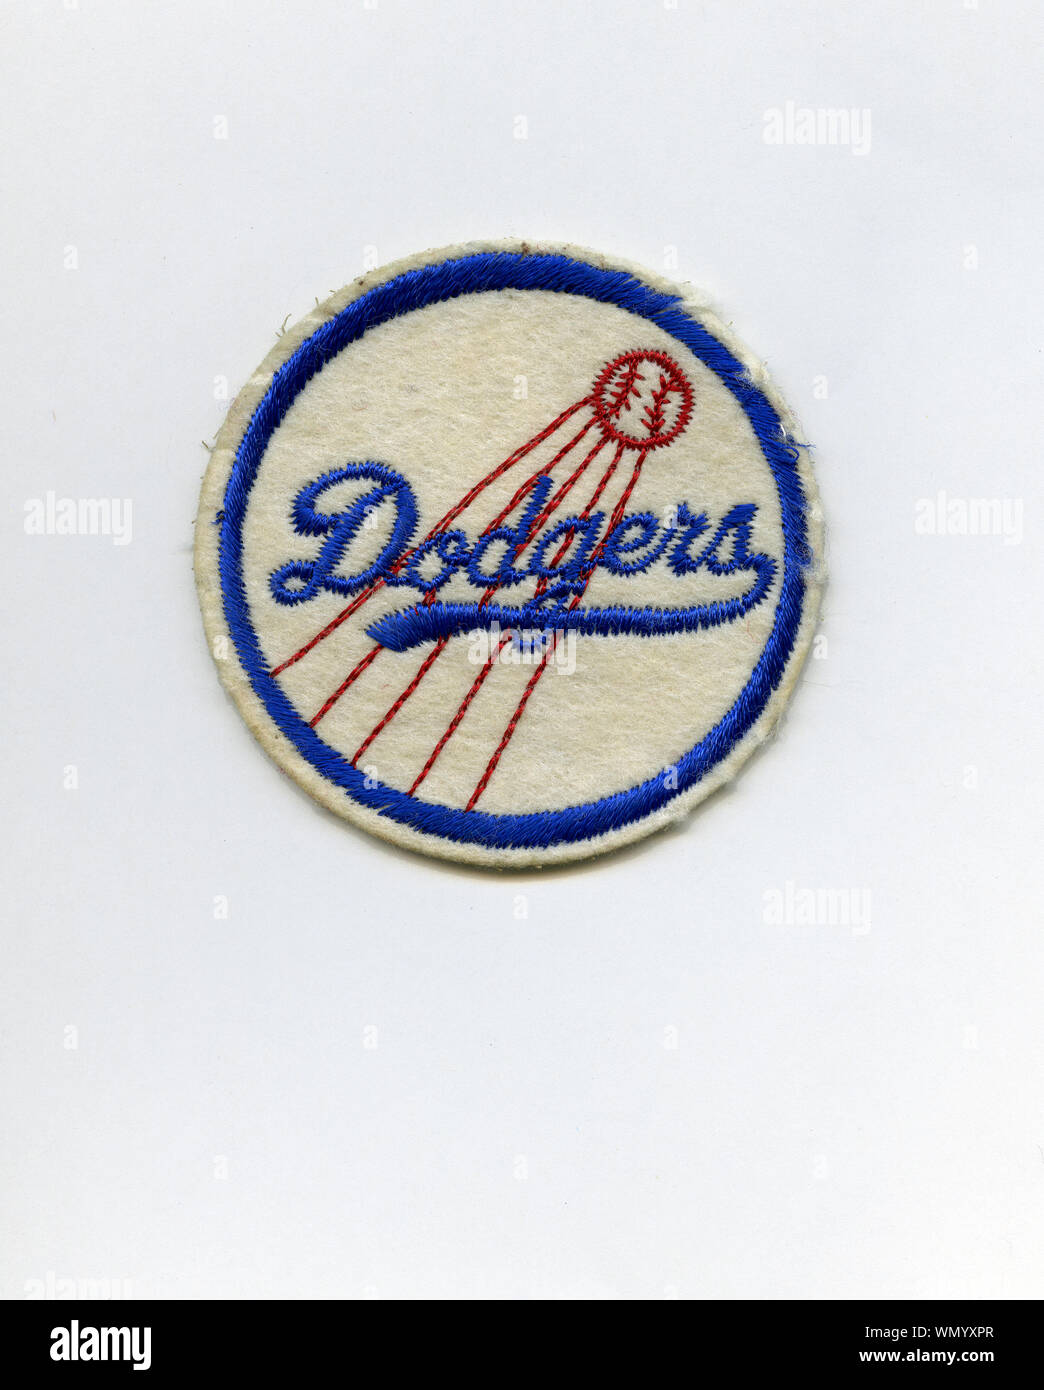 Jahrgang 1960 Der era Souvenir patch mit der Darstellung der Los Angeles Dodgers kultigen roten, weißen und blauen Team Logo Design. Stockfoto